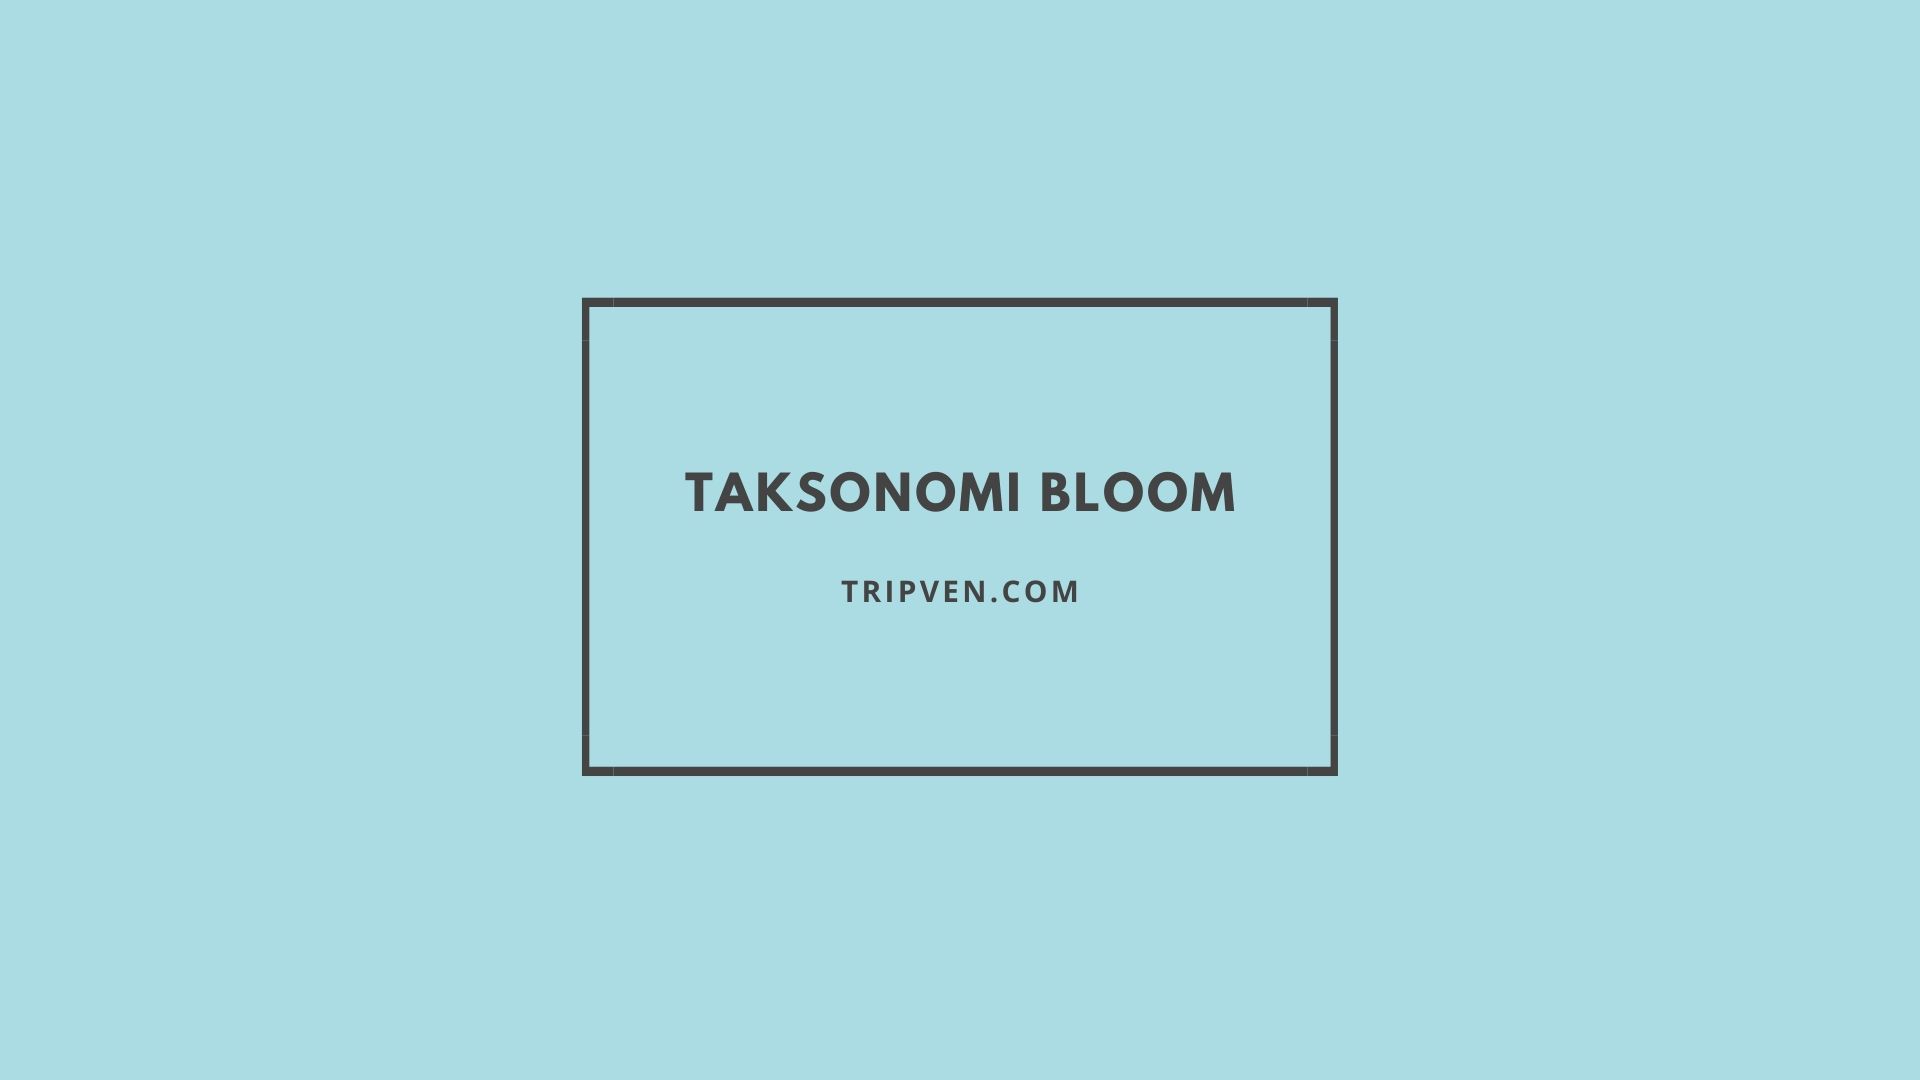 Taksonomi bloom terbaru